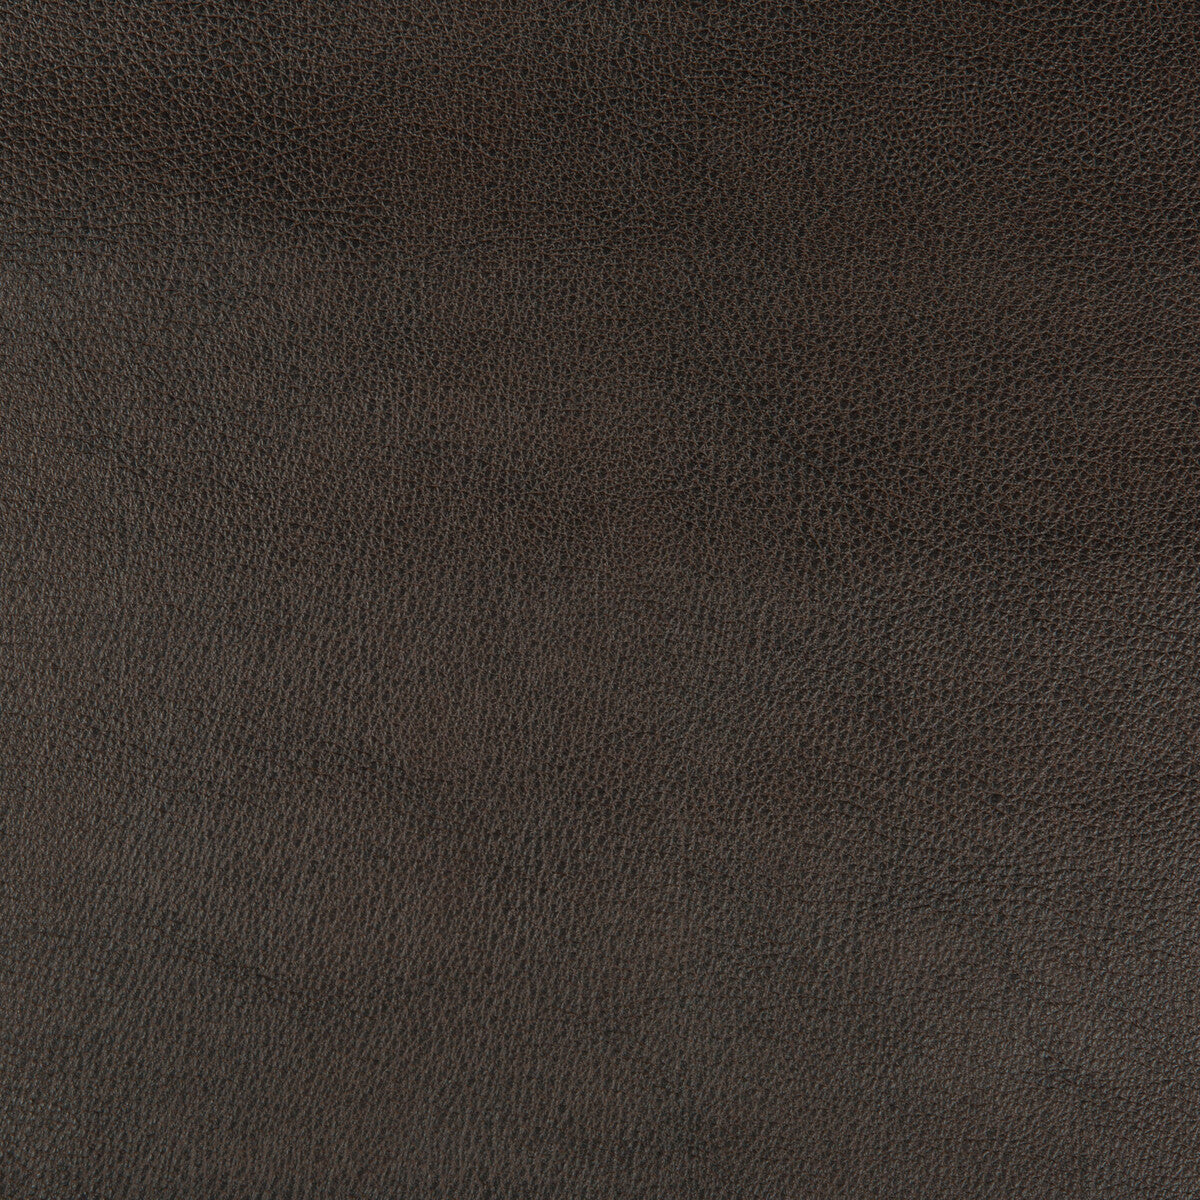 Kravet Design fabric in dust-86 color - pattern DUST.86.0 - by Kravet Design